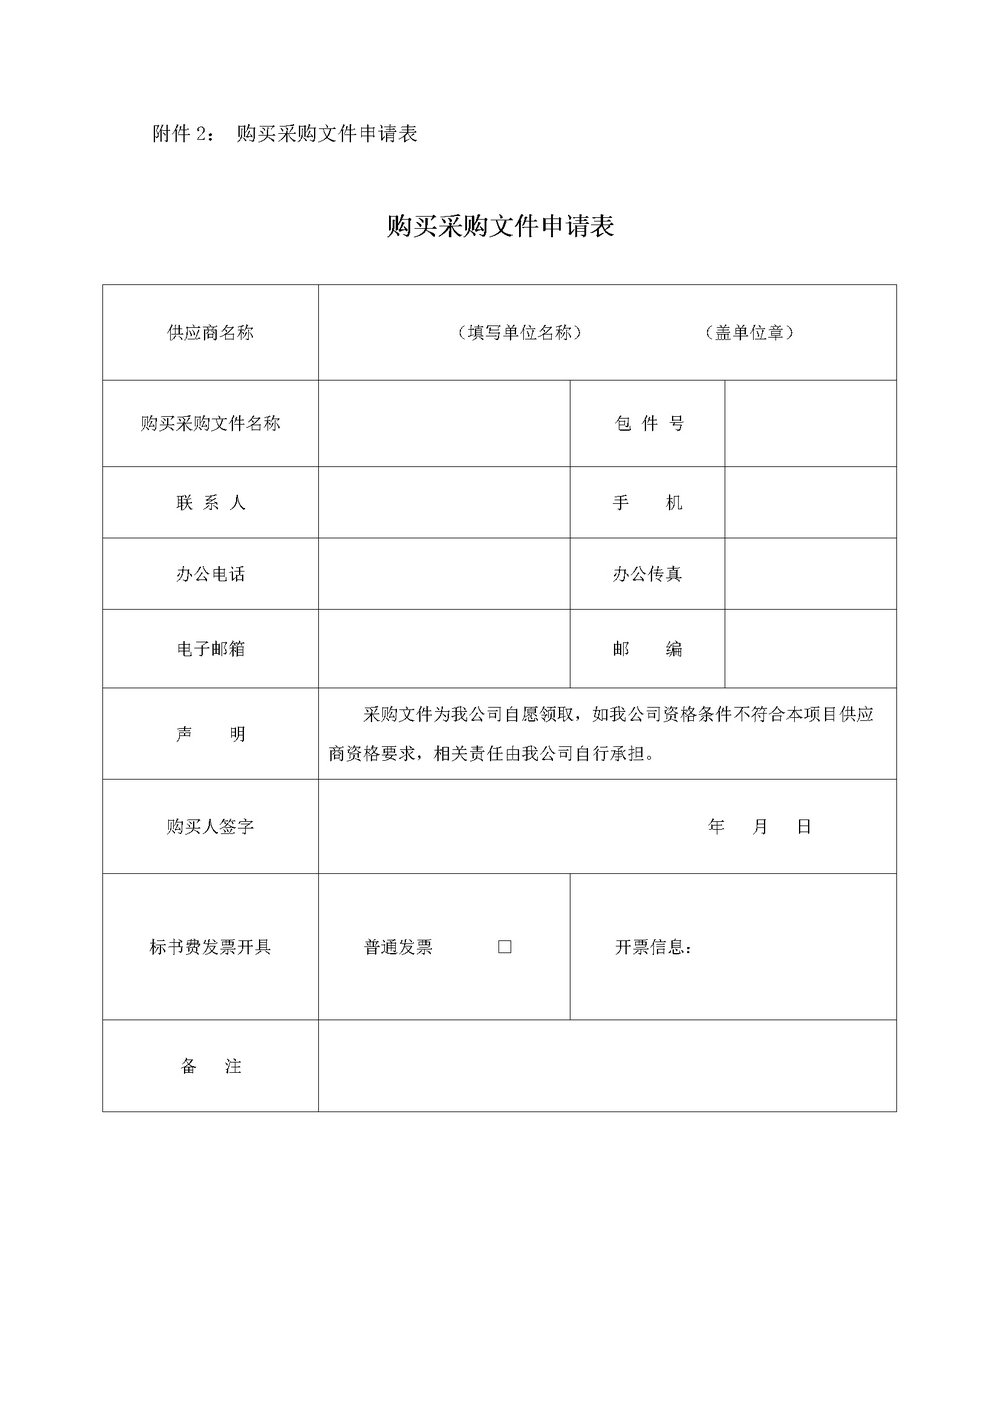 20220921重庆轨道交通18号线车辆段-停车场厨房设备采购项目公开采购公告5.jpg